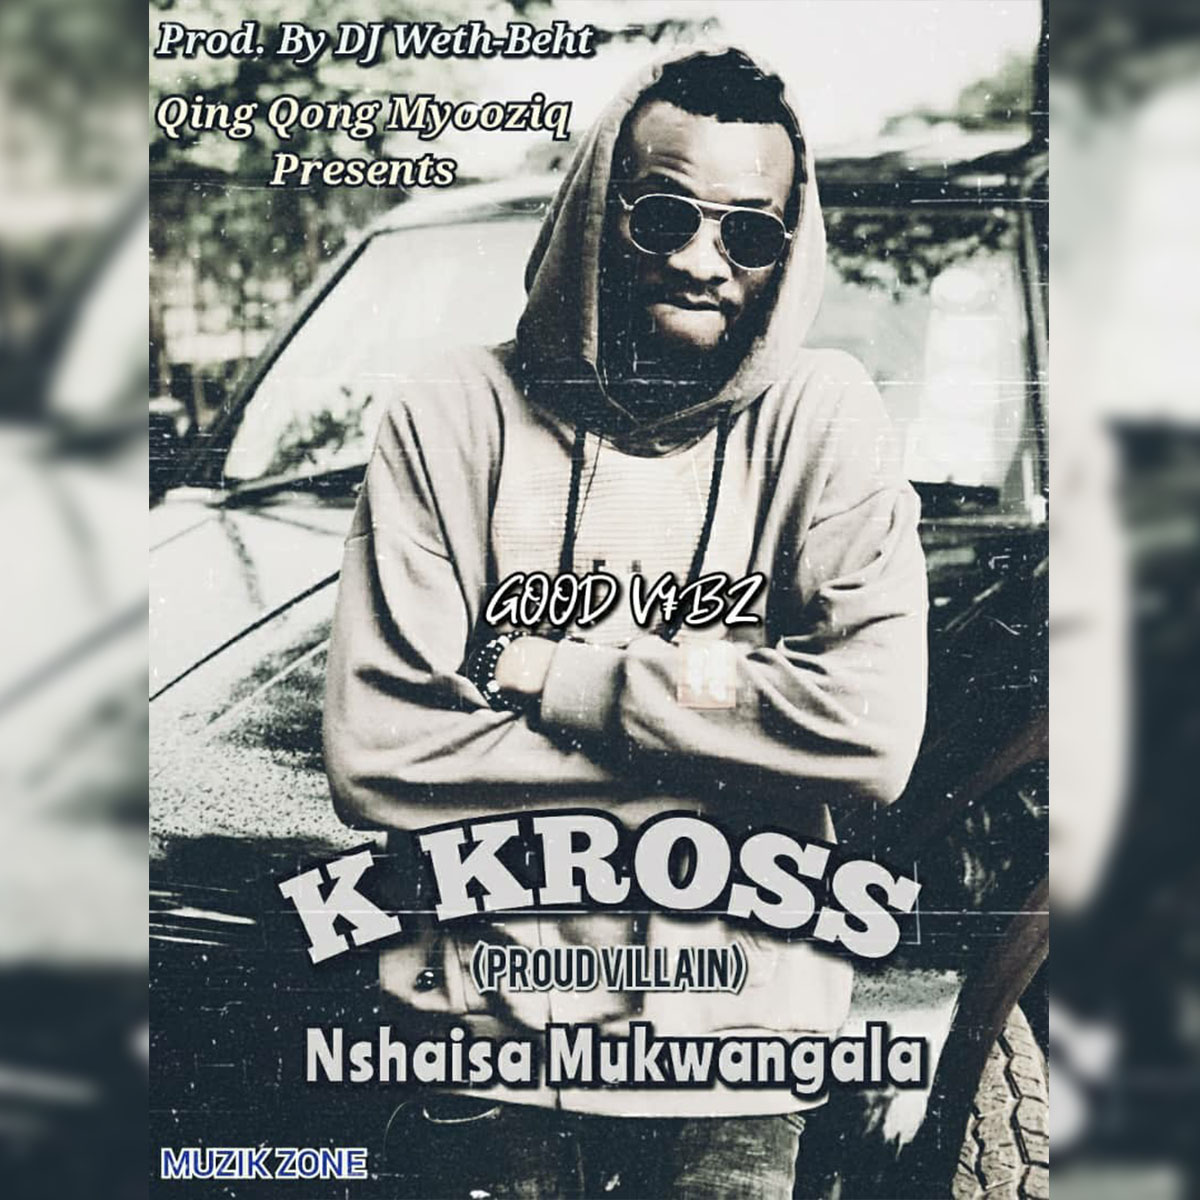 K Kross - Nshaisa Mukwangala (Prod. DJ Weth-Beht)